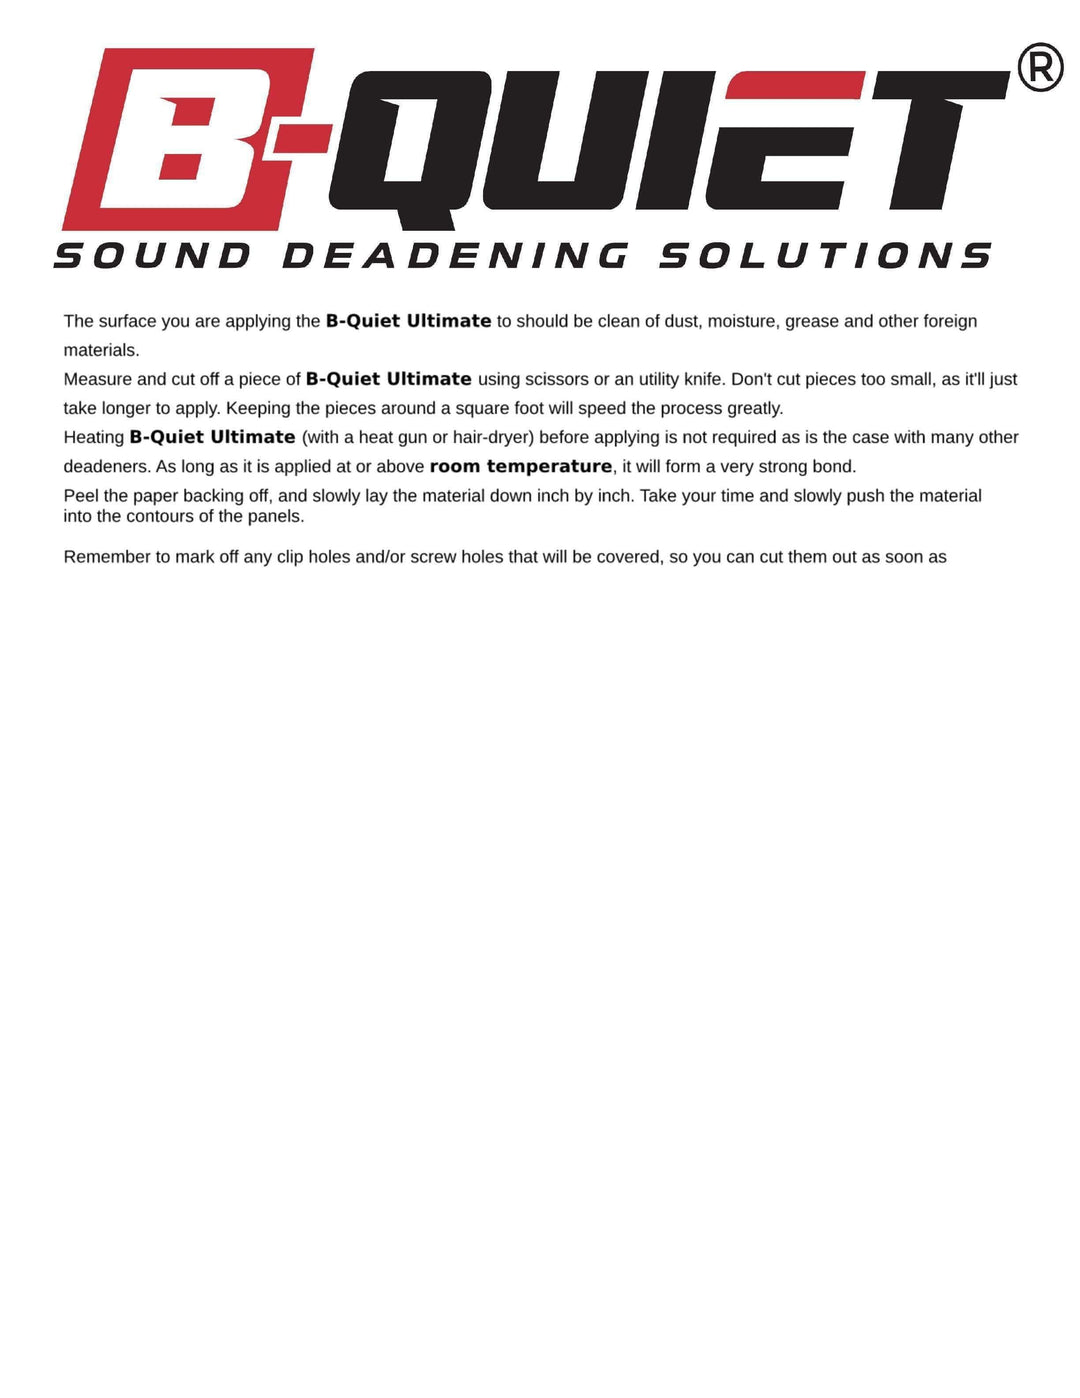 B-Quiet Ultimate Sound Deadener 50 SqFt. roll - B-Quiet